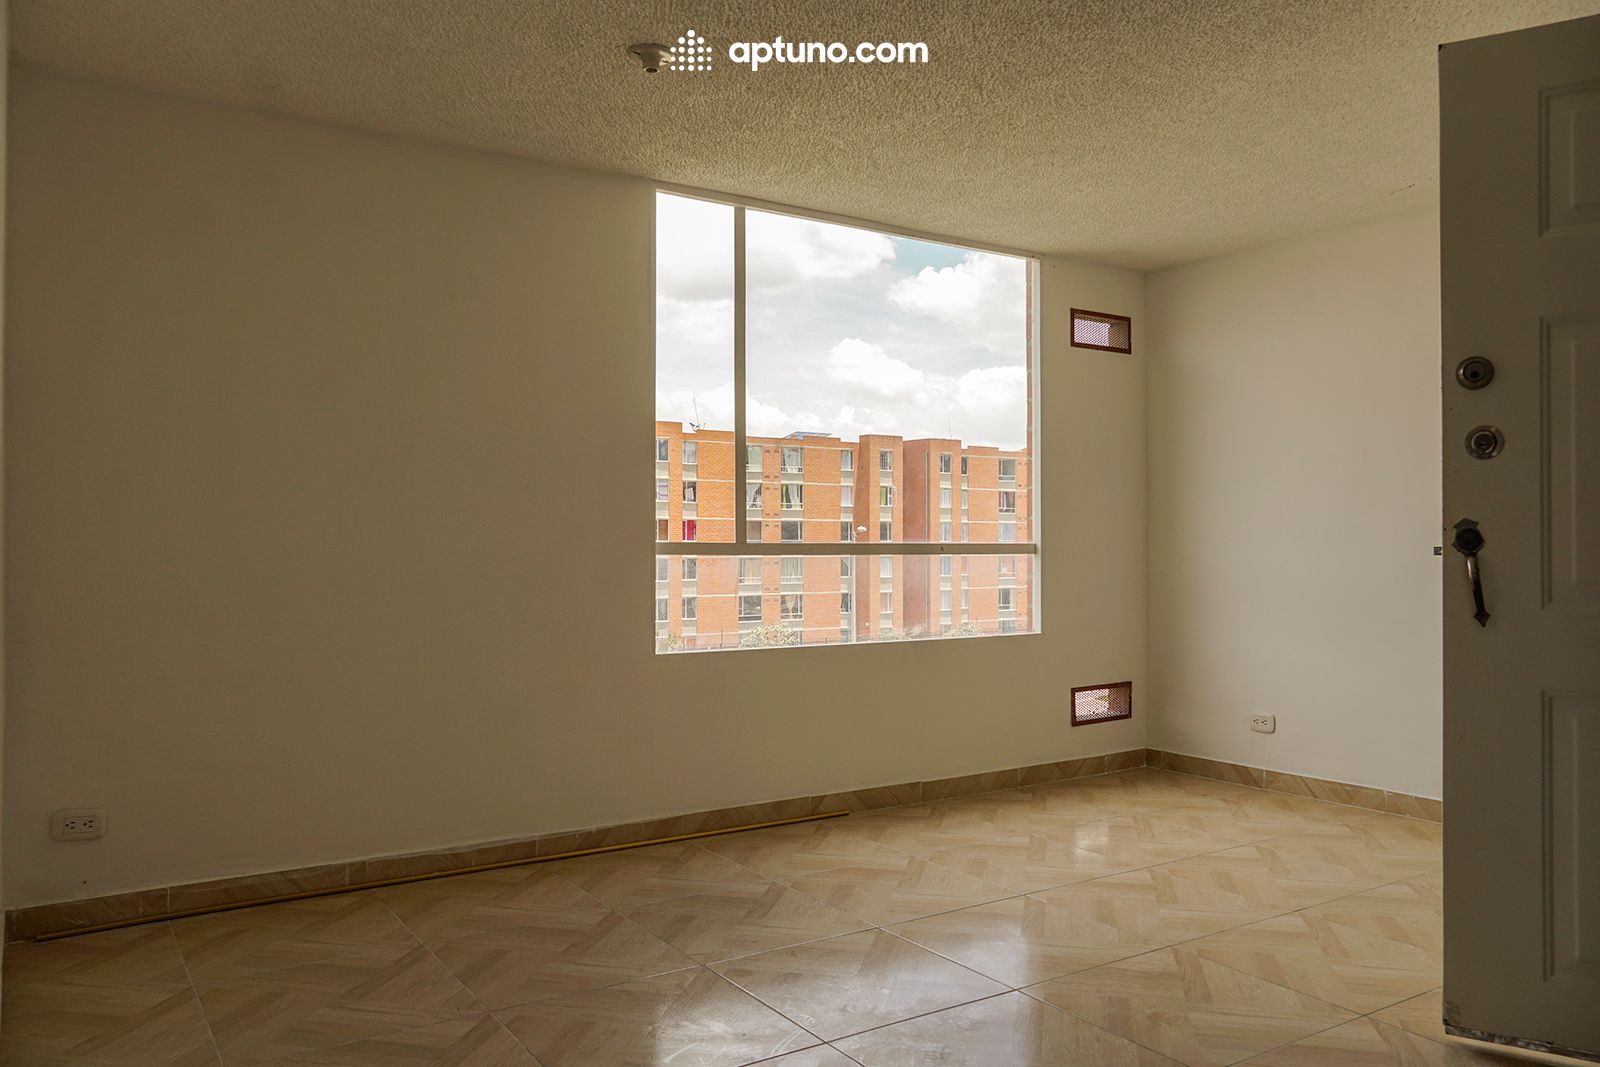 Apartamento en arriendo Centro 57 m² - $ 600.000,00